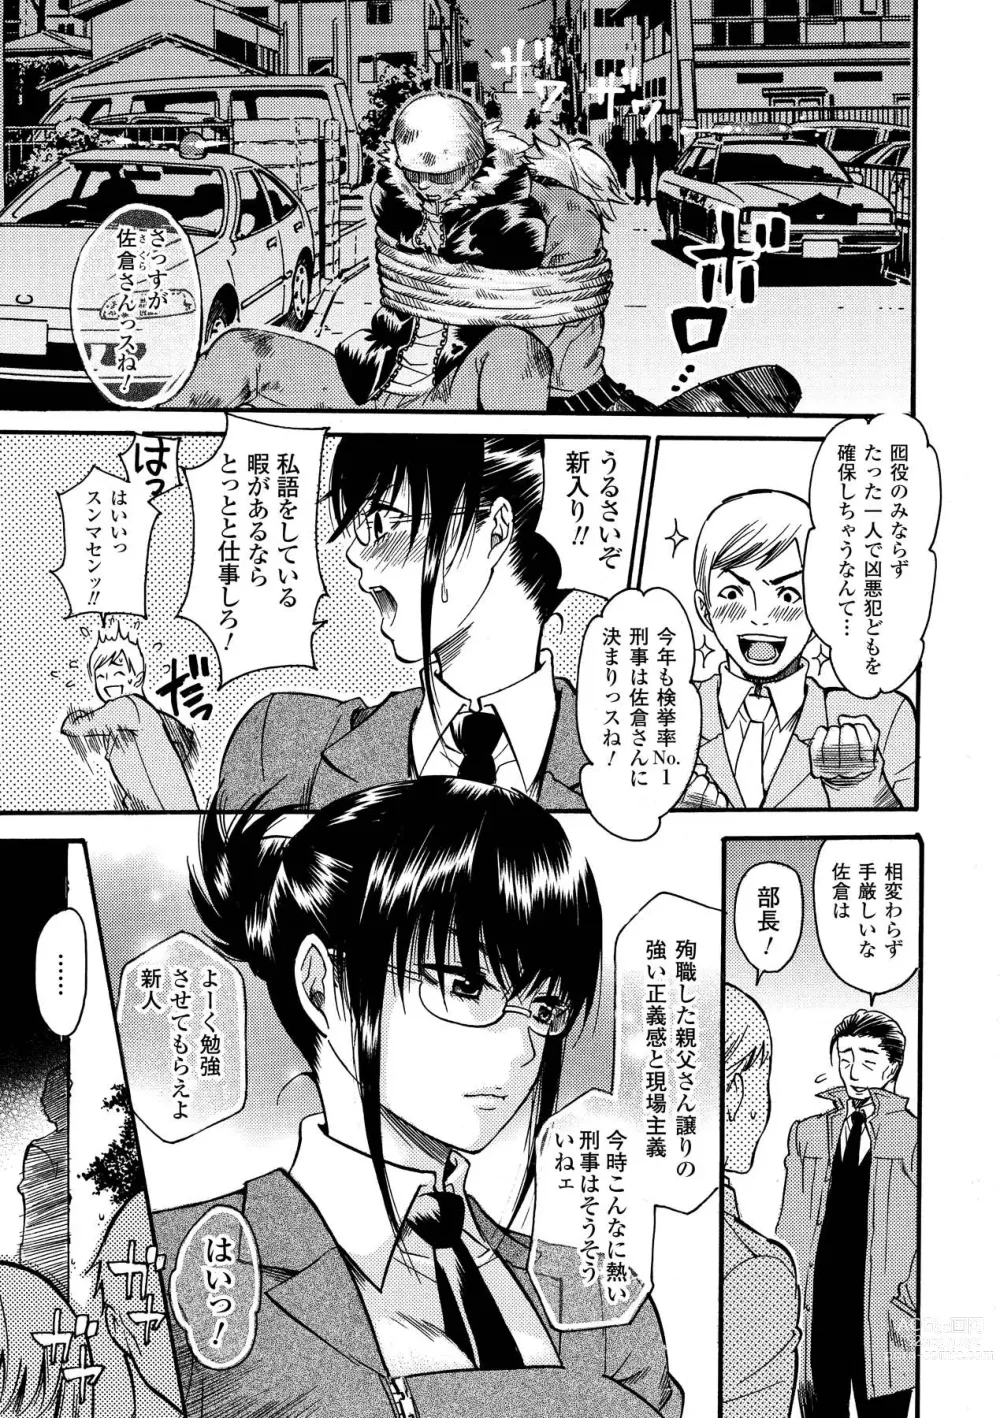 Page 7 of manga Aigan Masochist